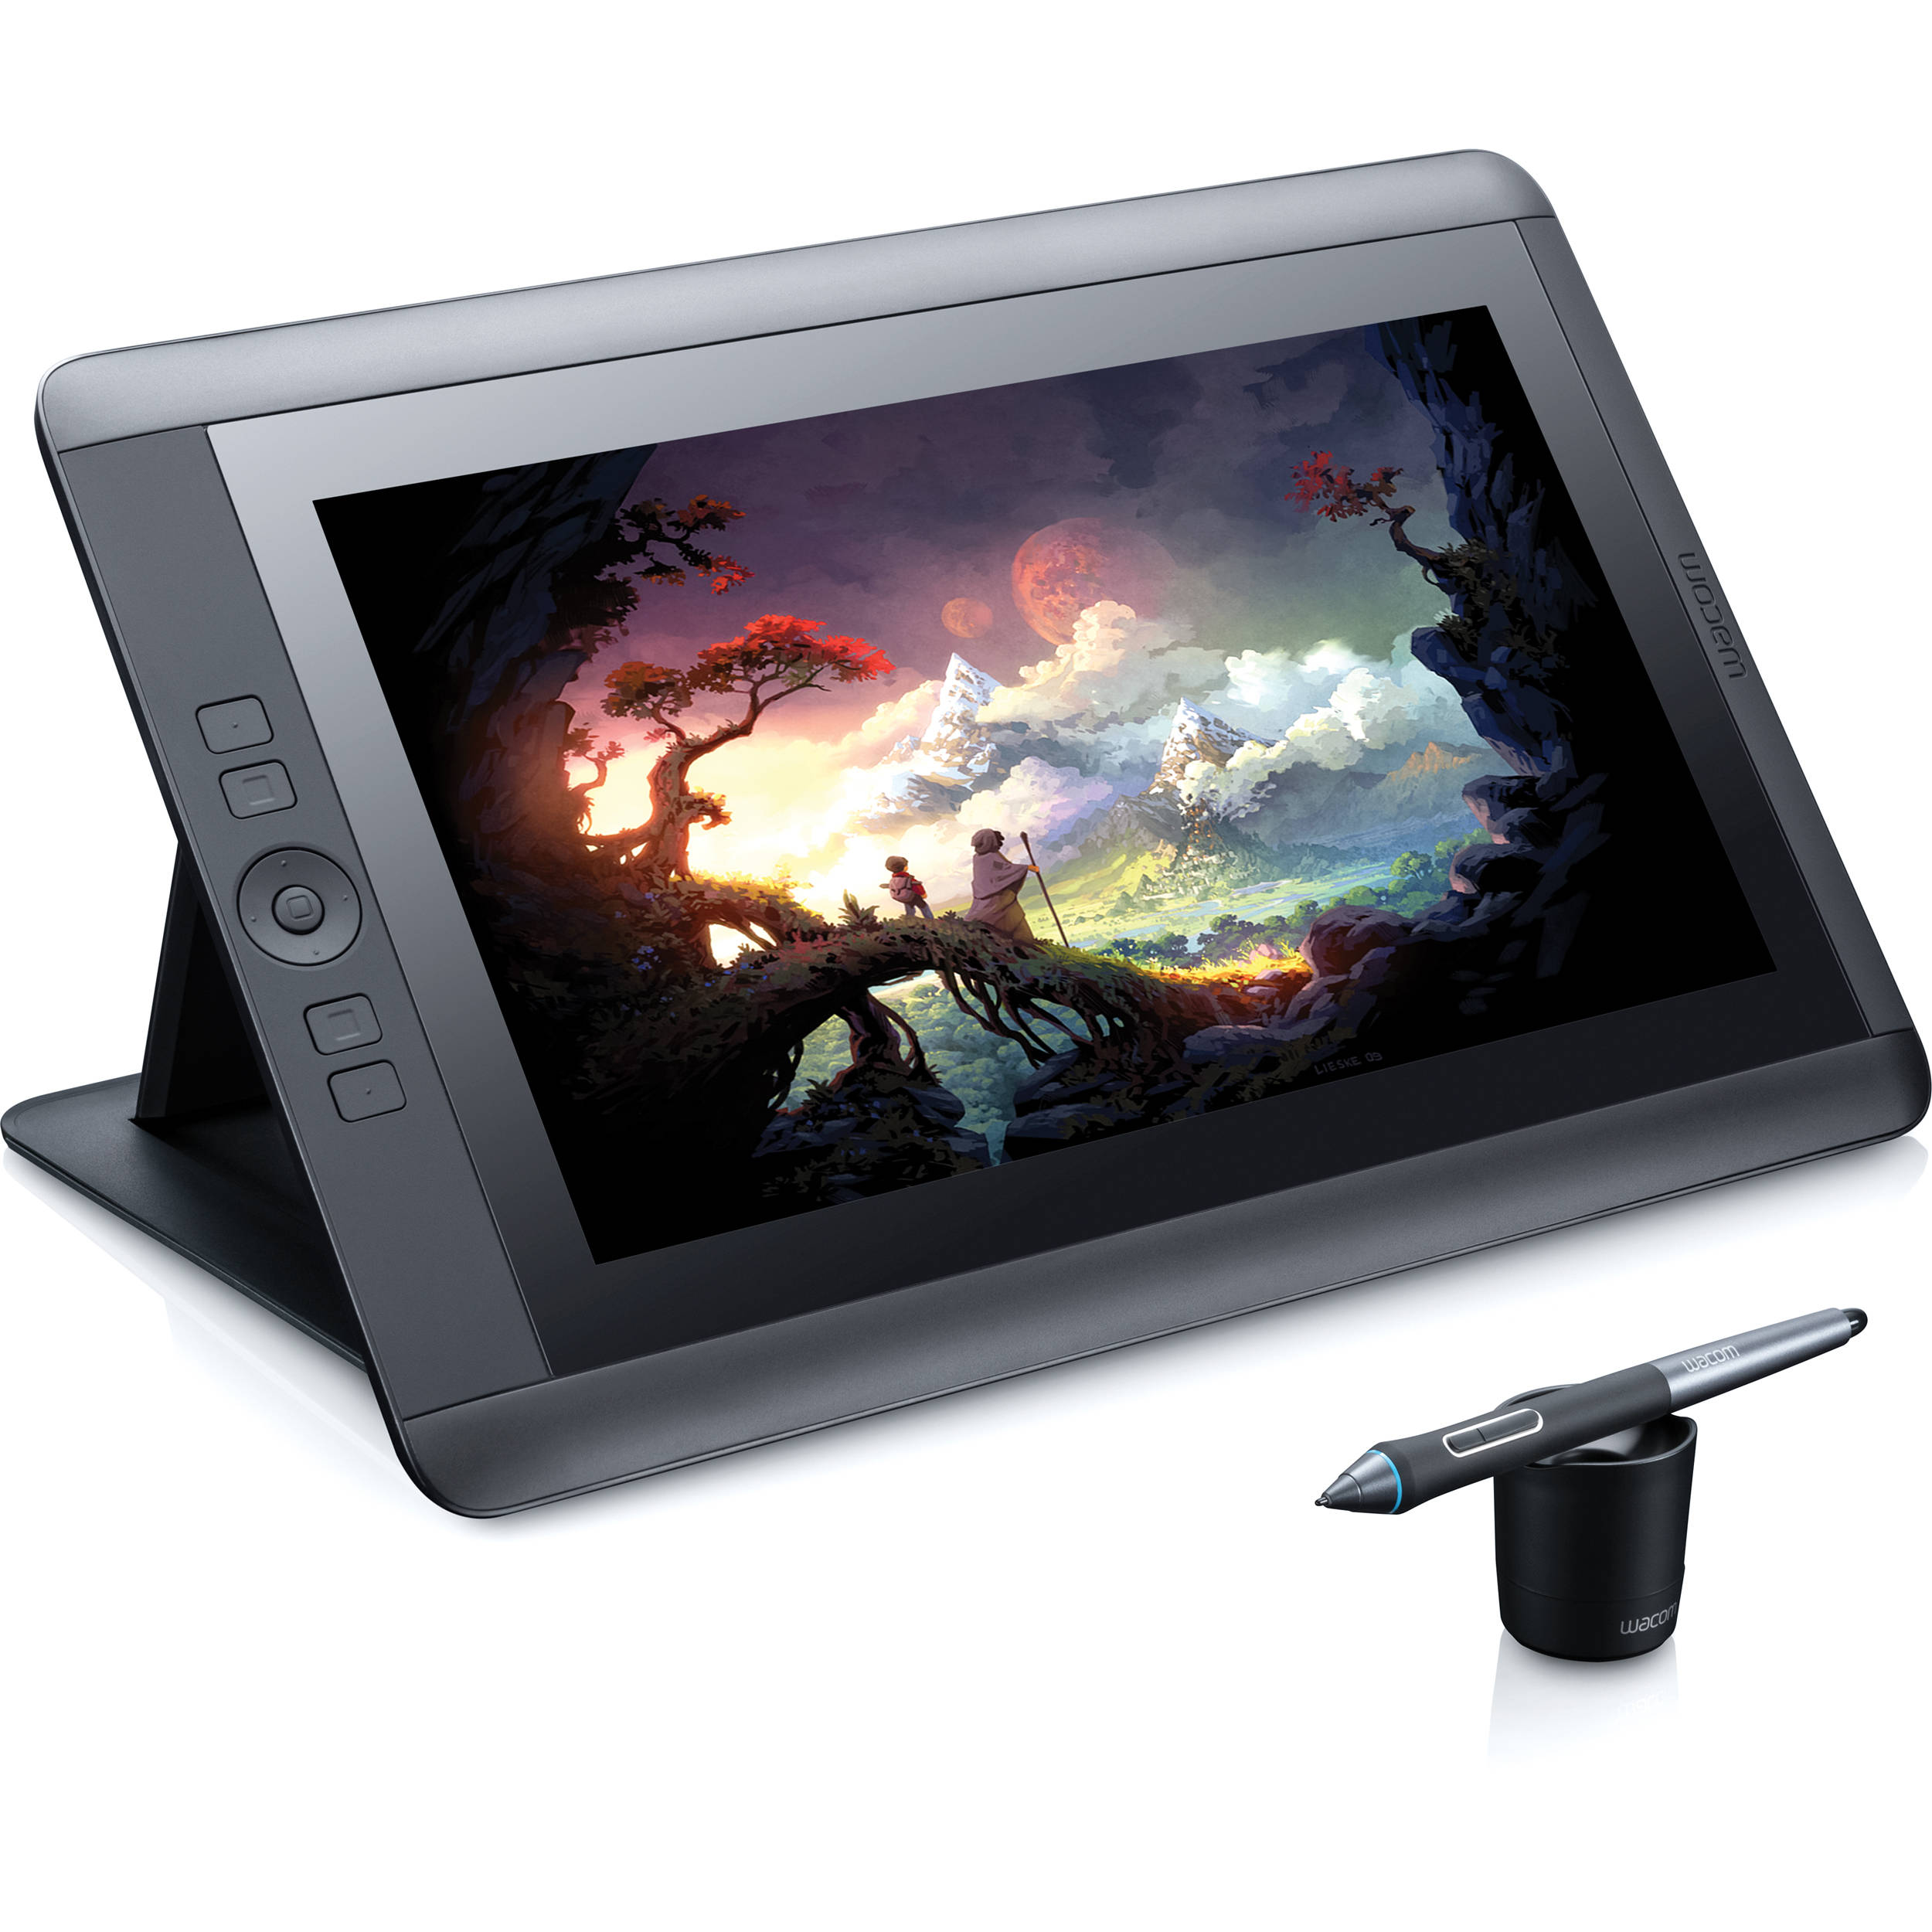 Grupo Deco comercializa al mejor precio tu monitor interactivo Cintiq 13HD - Colombia